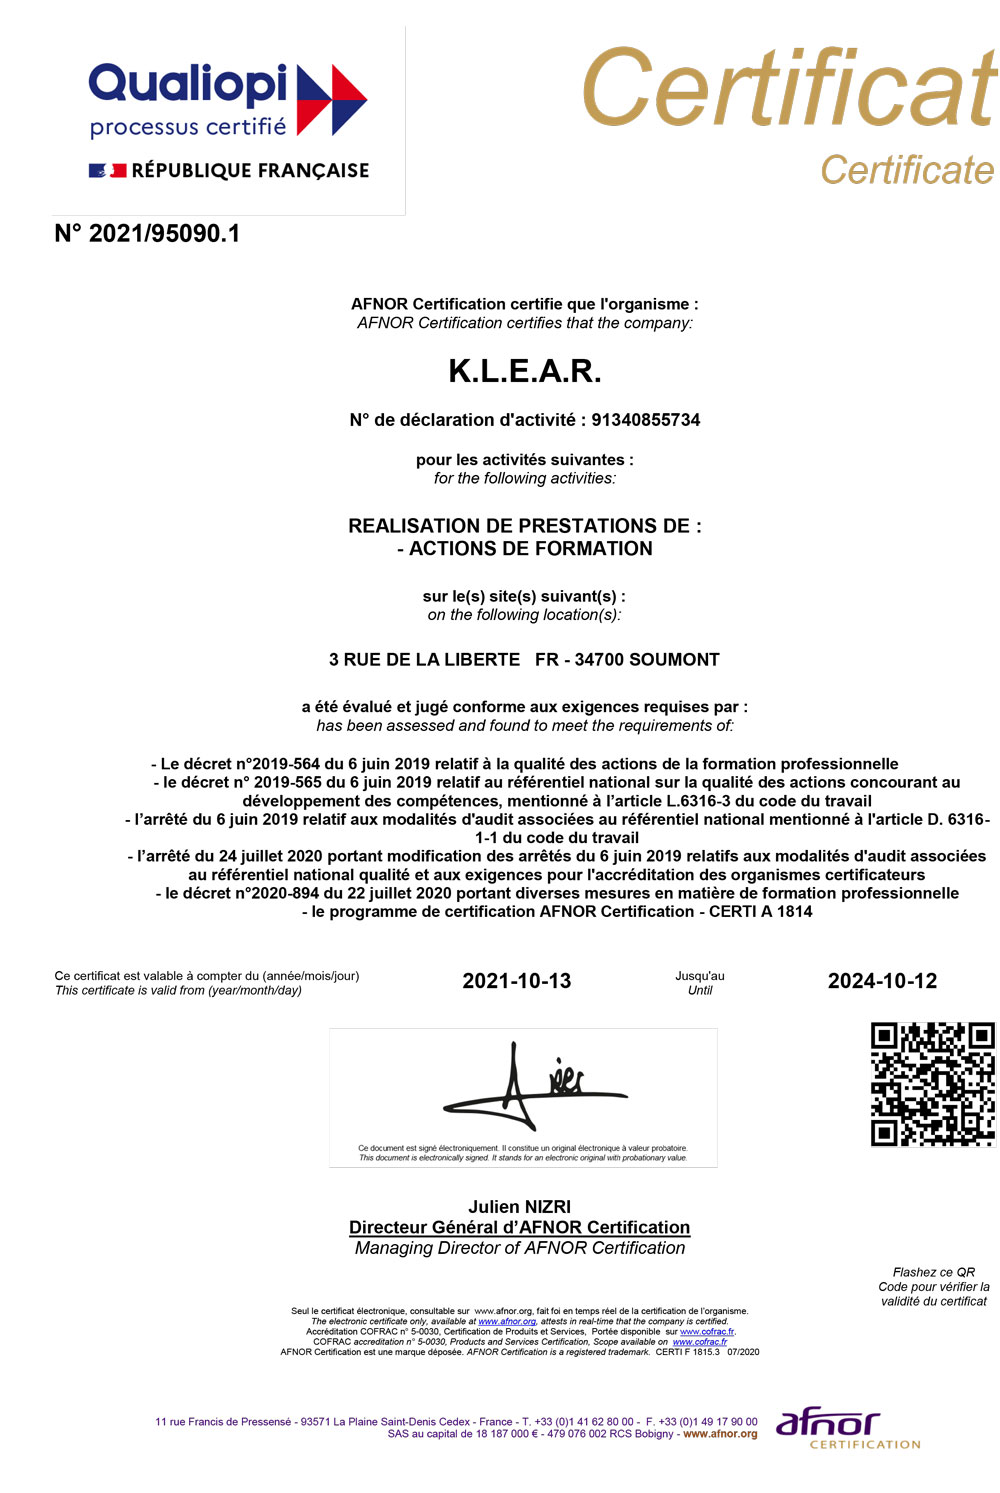 klear-certificat-qualiopi